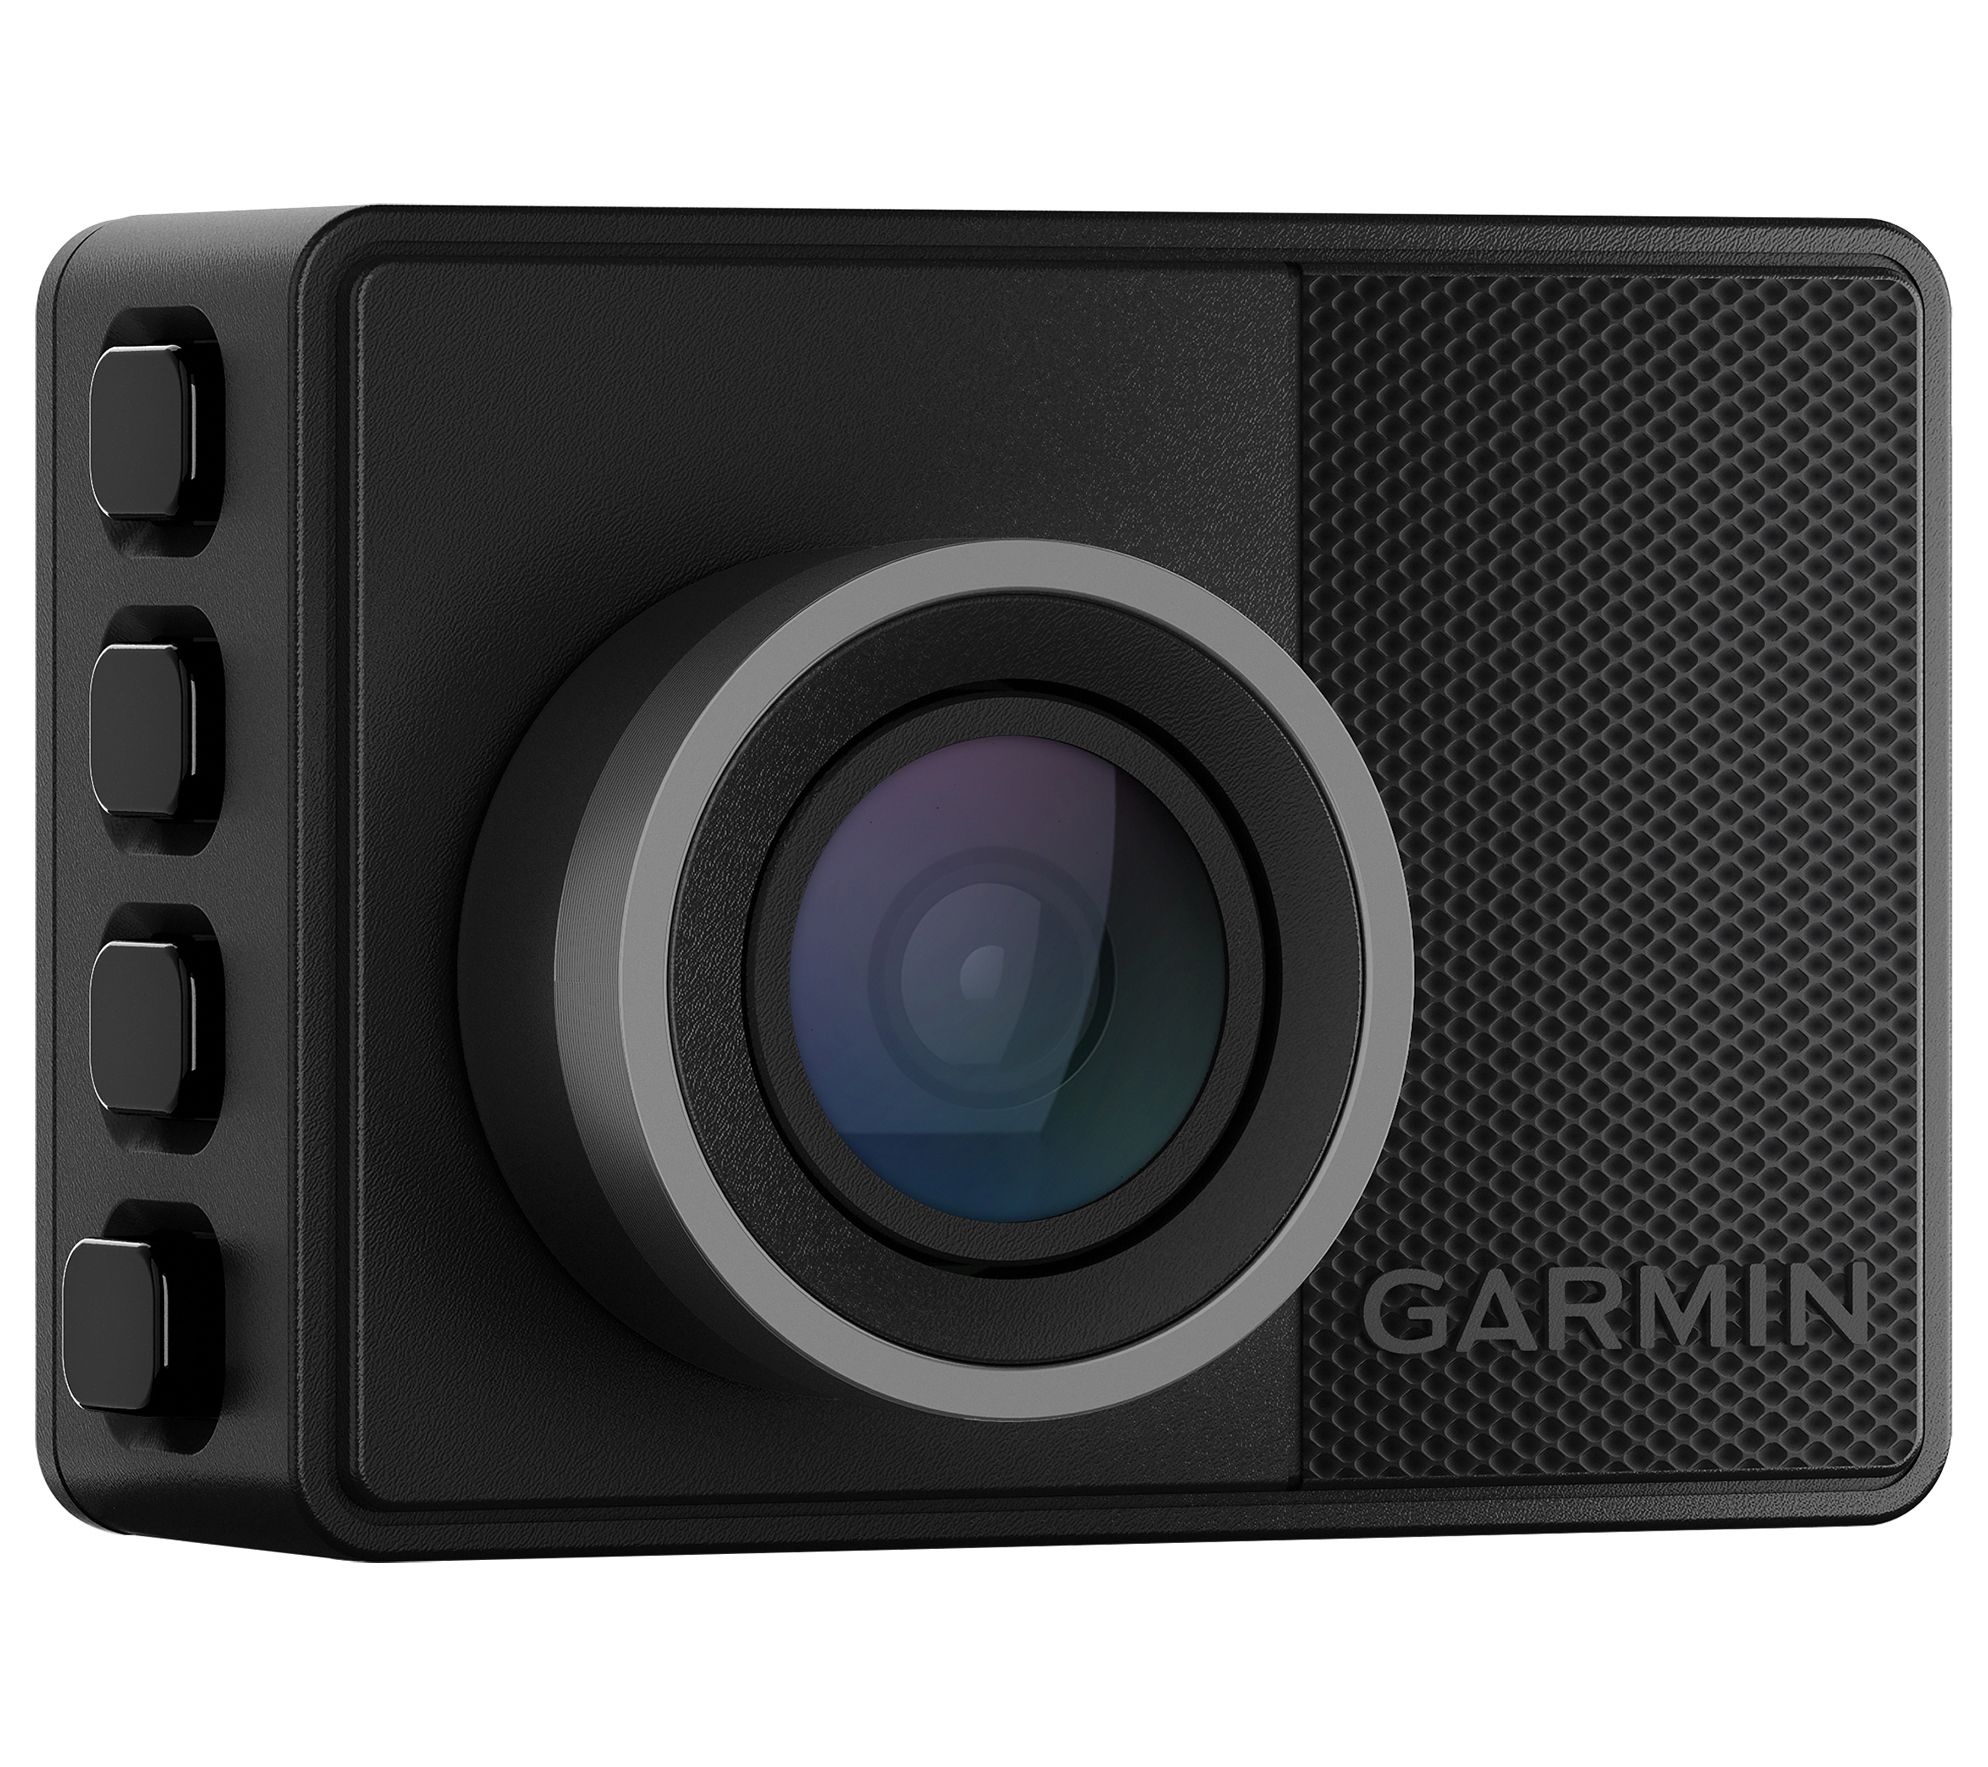 Garmin Dash Cam Camera Mini 2 Small 1080p and 140-degree FOV